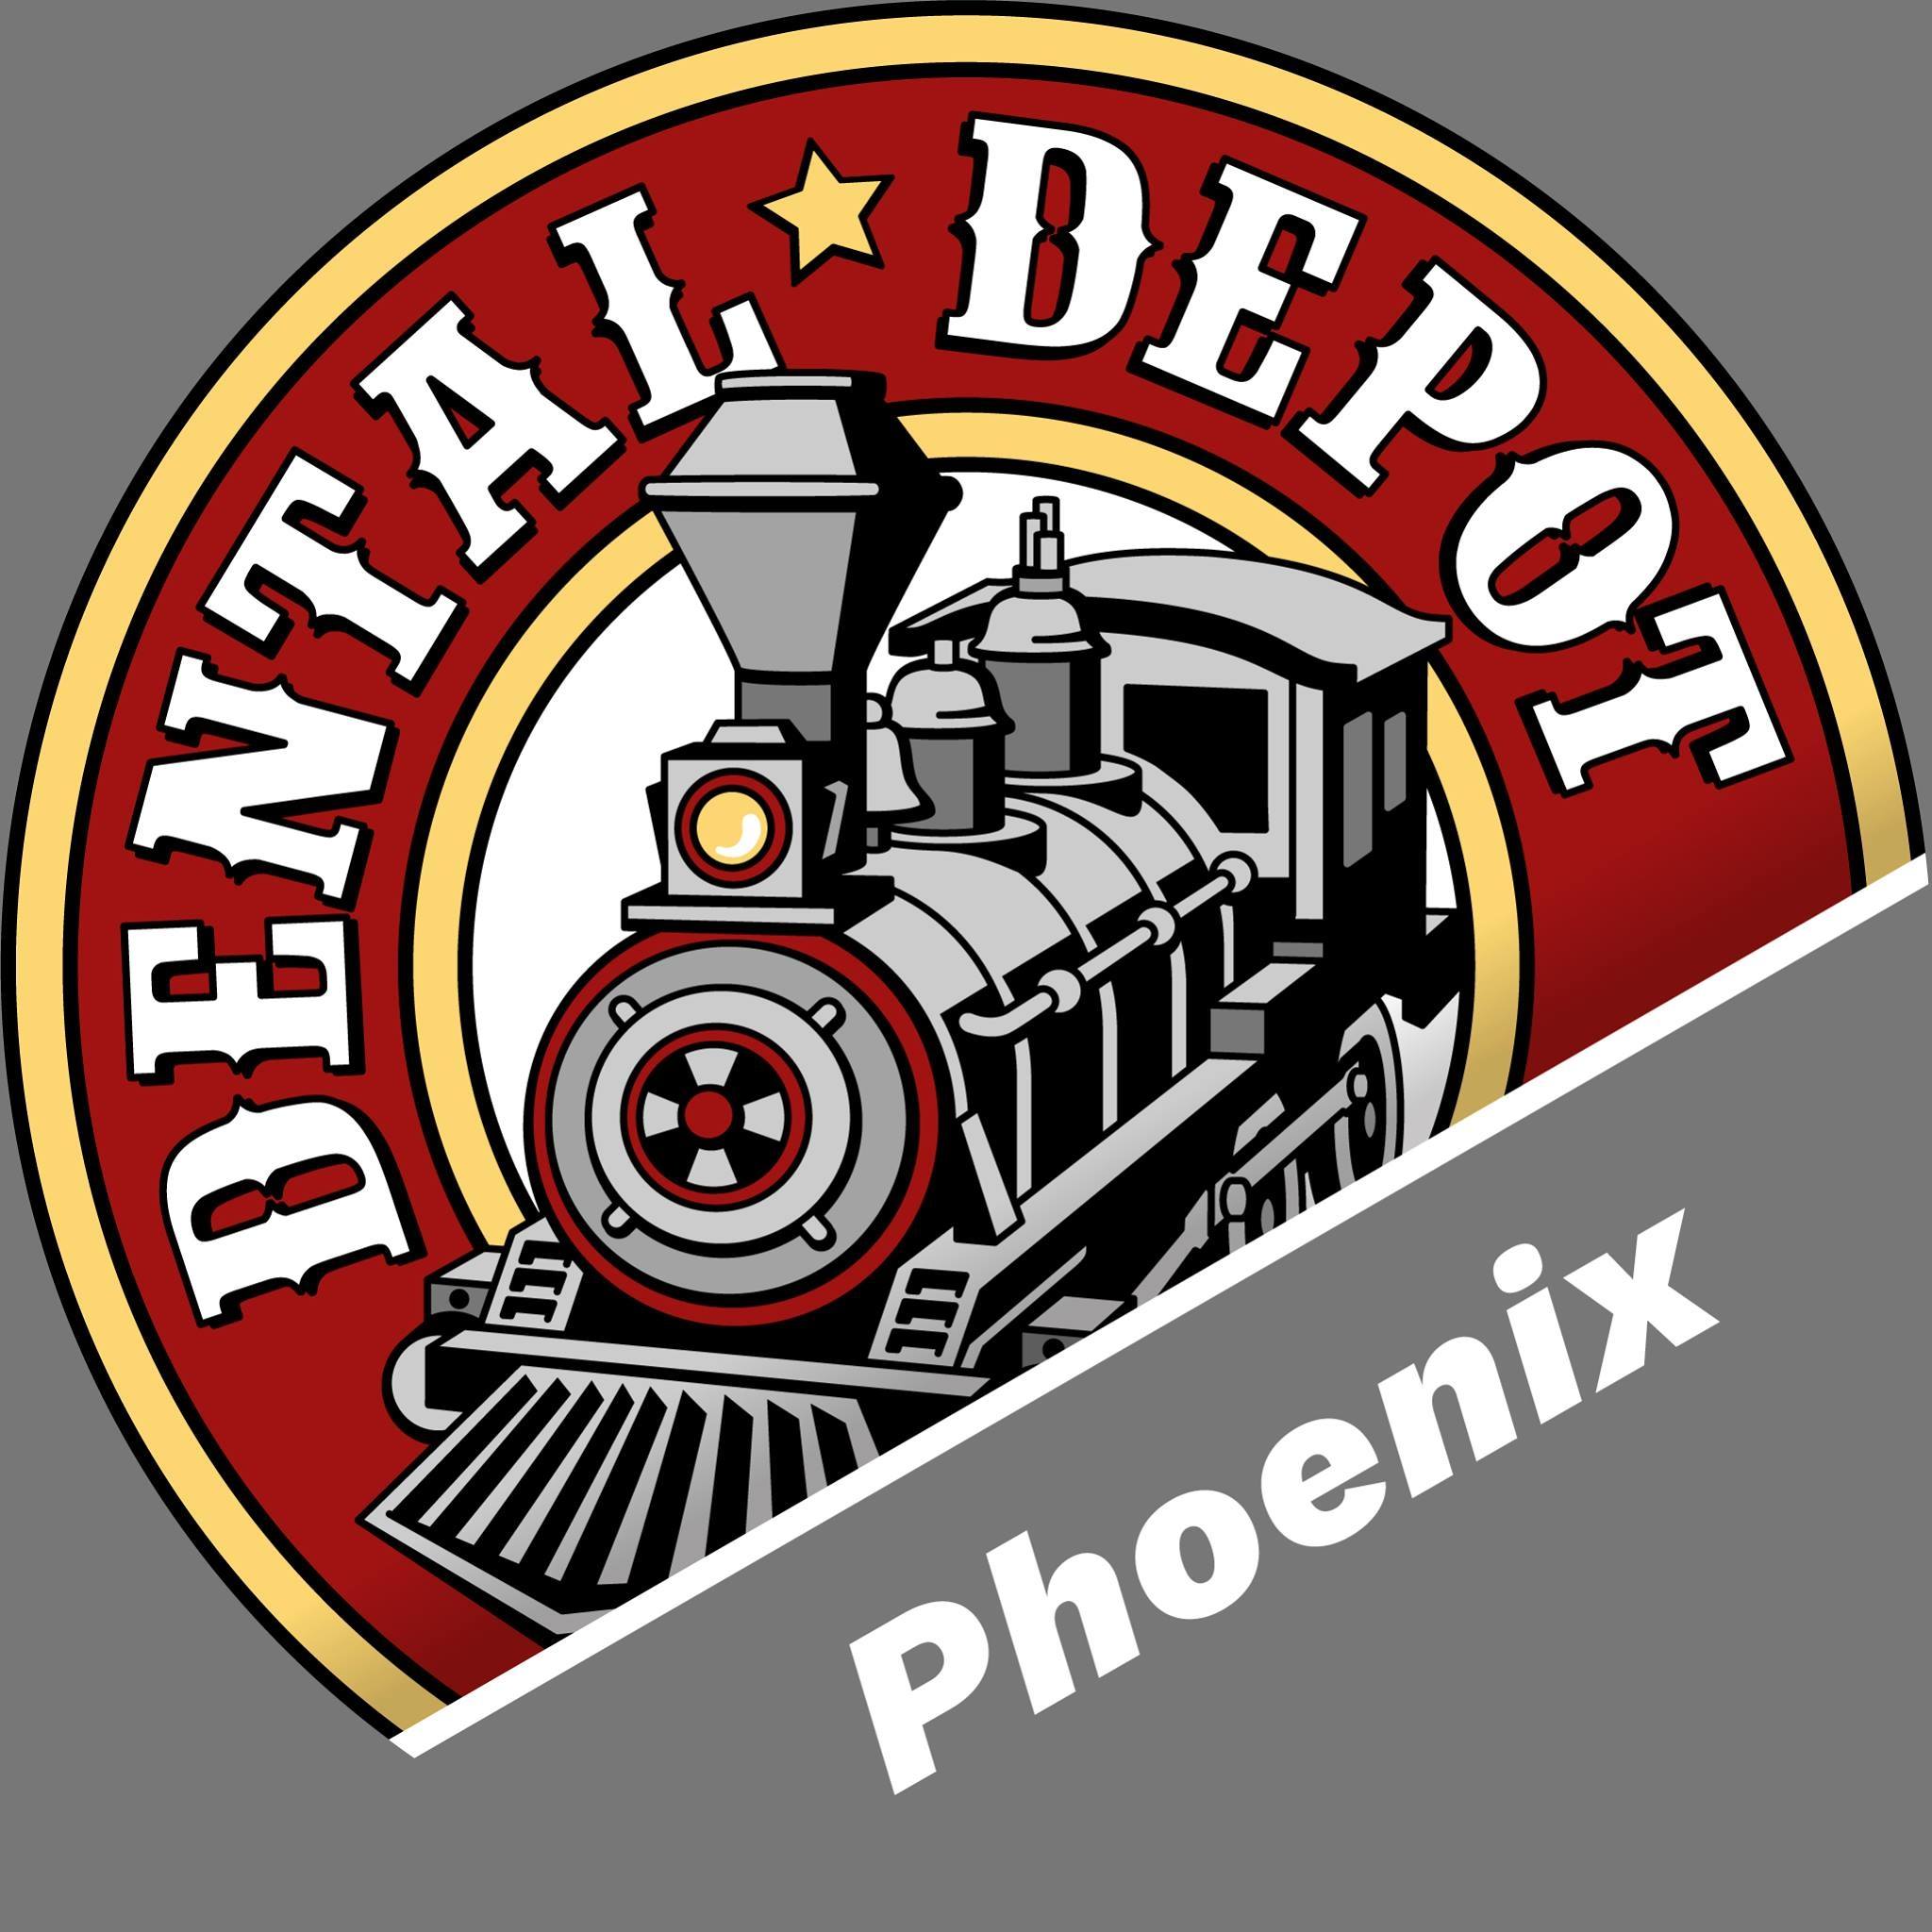 Company logo of Dental Depot